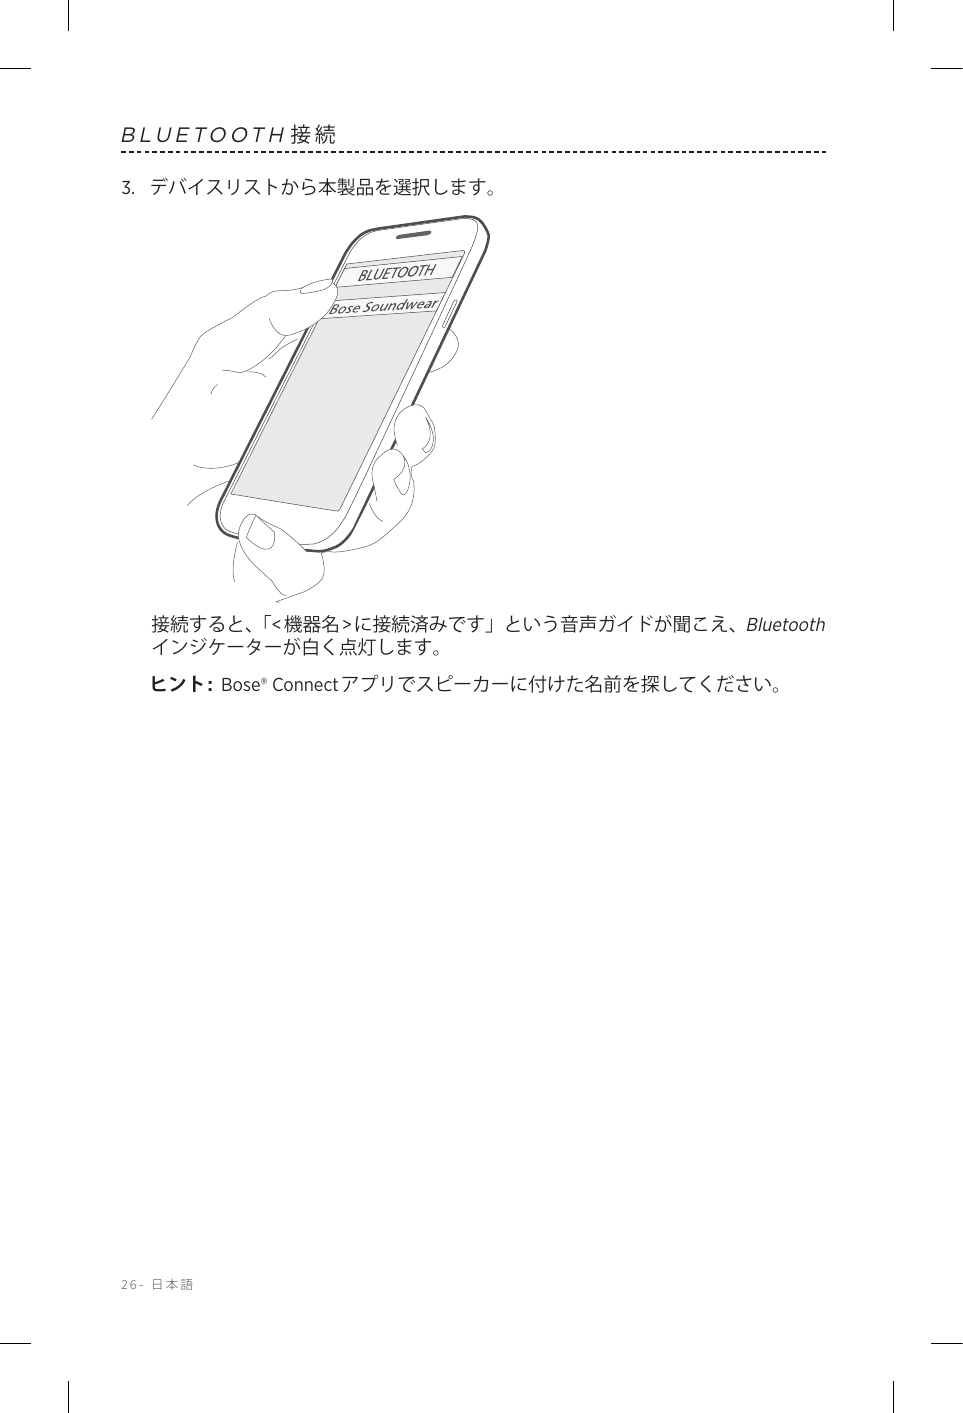 26-  日本語BLUETOOTH接続3.  デバイスリストから本製品を選択します。接続すると、「&lt;機器名&gt;に接続済みです」という音声ガイドが聞こえ、Bluetoothインジケーターが白く点灯します。ヒント:  Bose® Connectアプリでスピーカーに付けた名前を探してください。